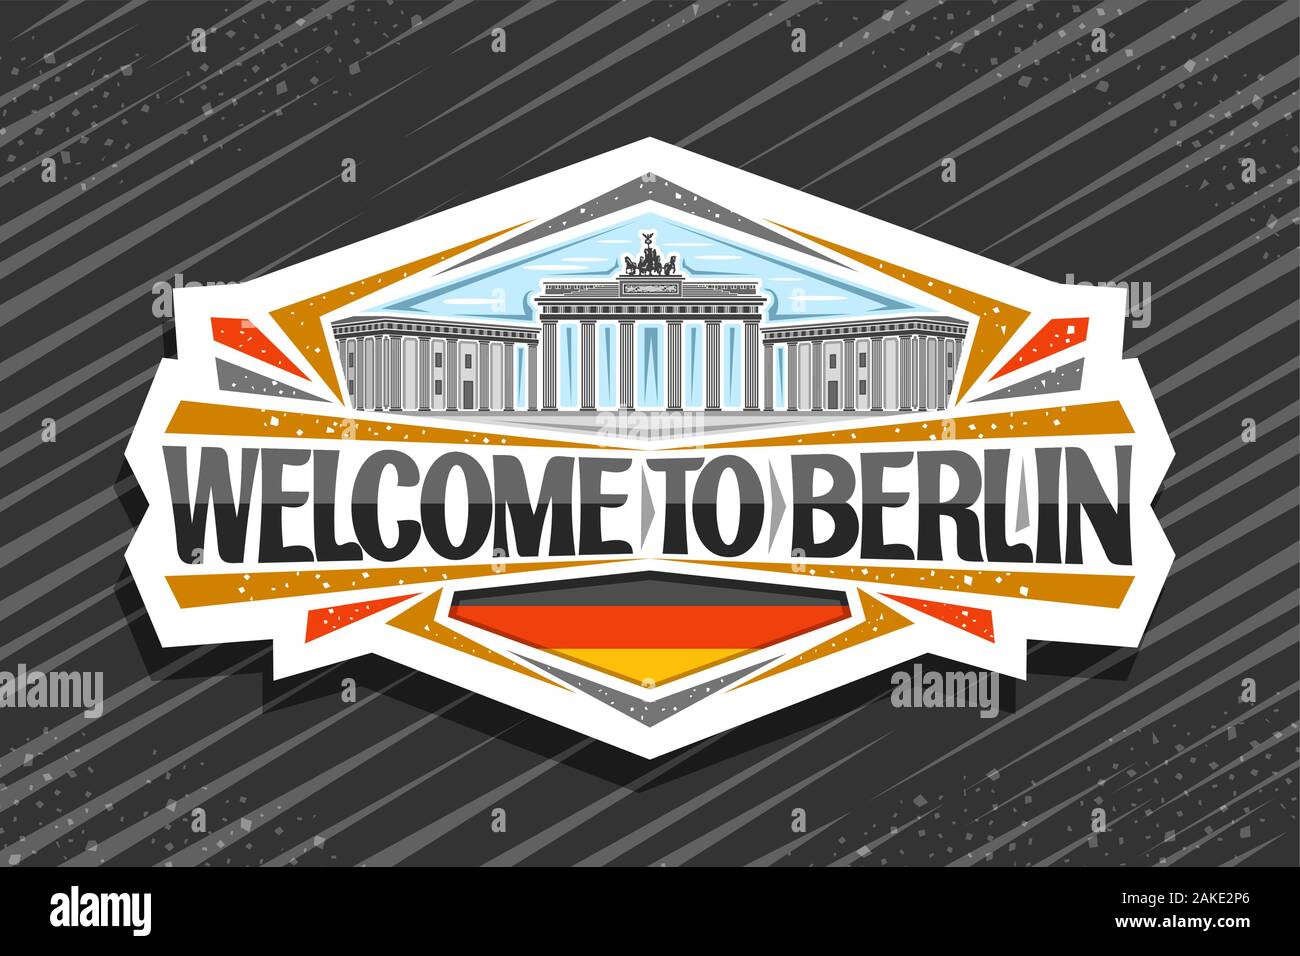 Vektor logo für Berlin, dekoratives Papier schneiden Abzeichen mit der Abbildung des Brandenburger Tor am Himmel Hintergrund, touristische Kühlschrank Magnet mit Brush Script fo Stock Vektor